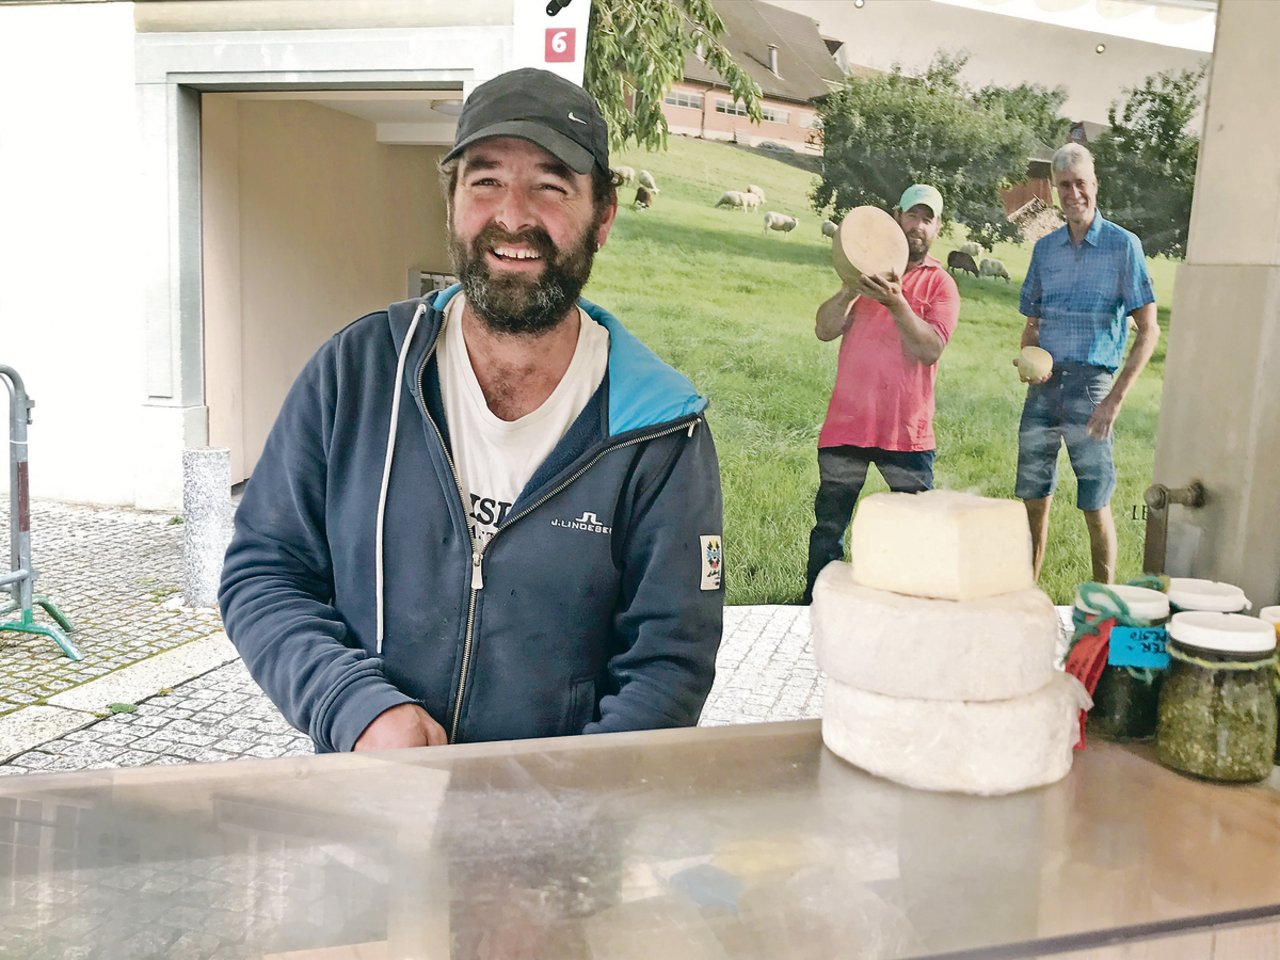 Der Thurgauer Hansjörg Ziegler stellt aus der Milch seiner Schafe Produkte wie Joghurt und Käse her. Sein Sortiment bietet er auf verschiedenen Wochenmärkten an. (Bilder Alexandra Stückelberger)